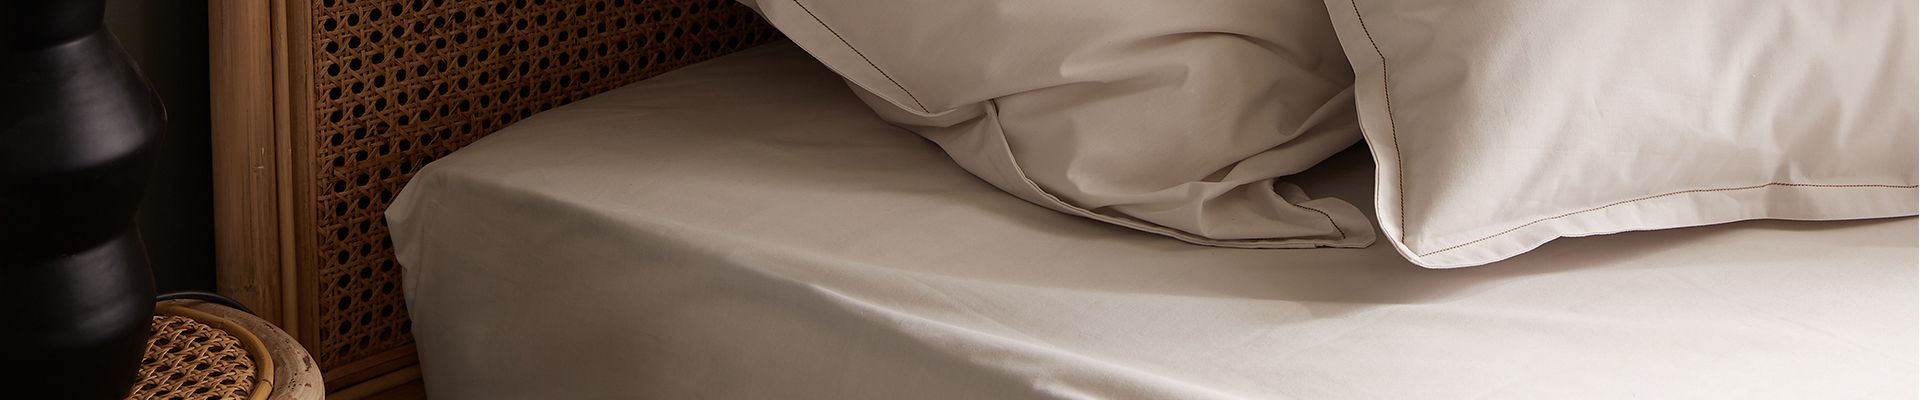 Ce qu'il faut savoir pour choisir le bon drap housse pour le lit